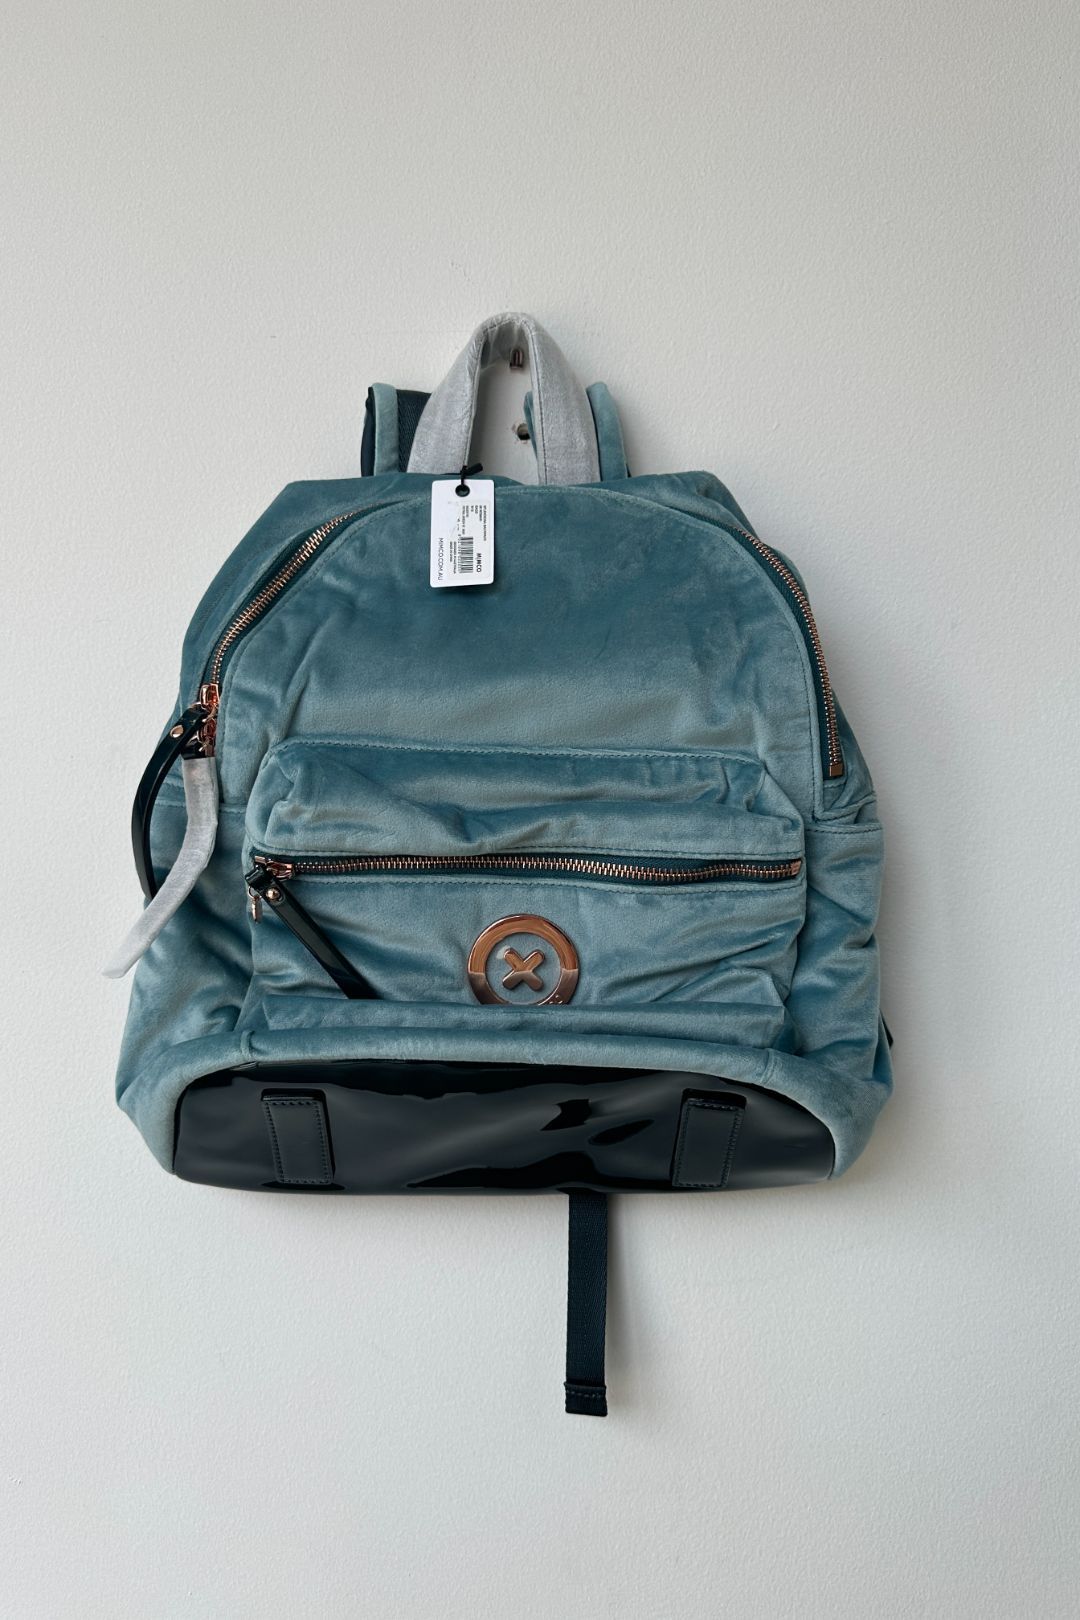 Mimco Splendiosa Velvet Backpack in Petrol Green 